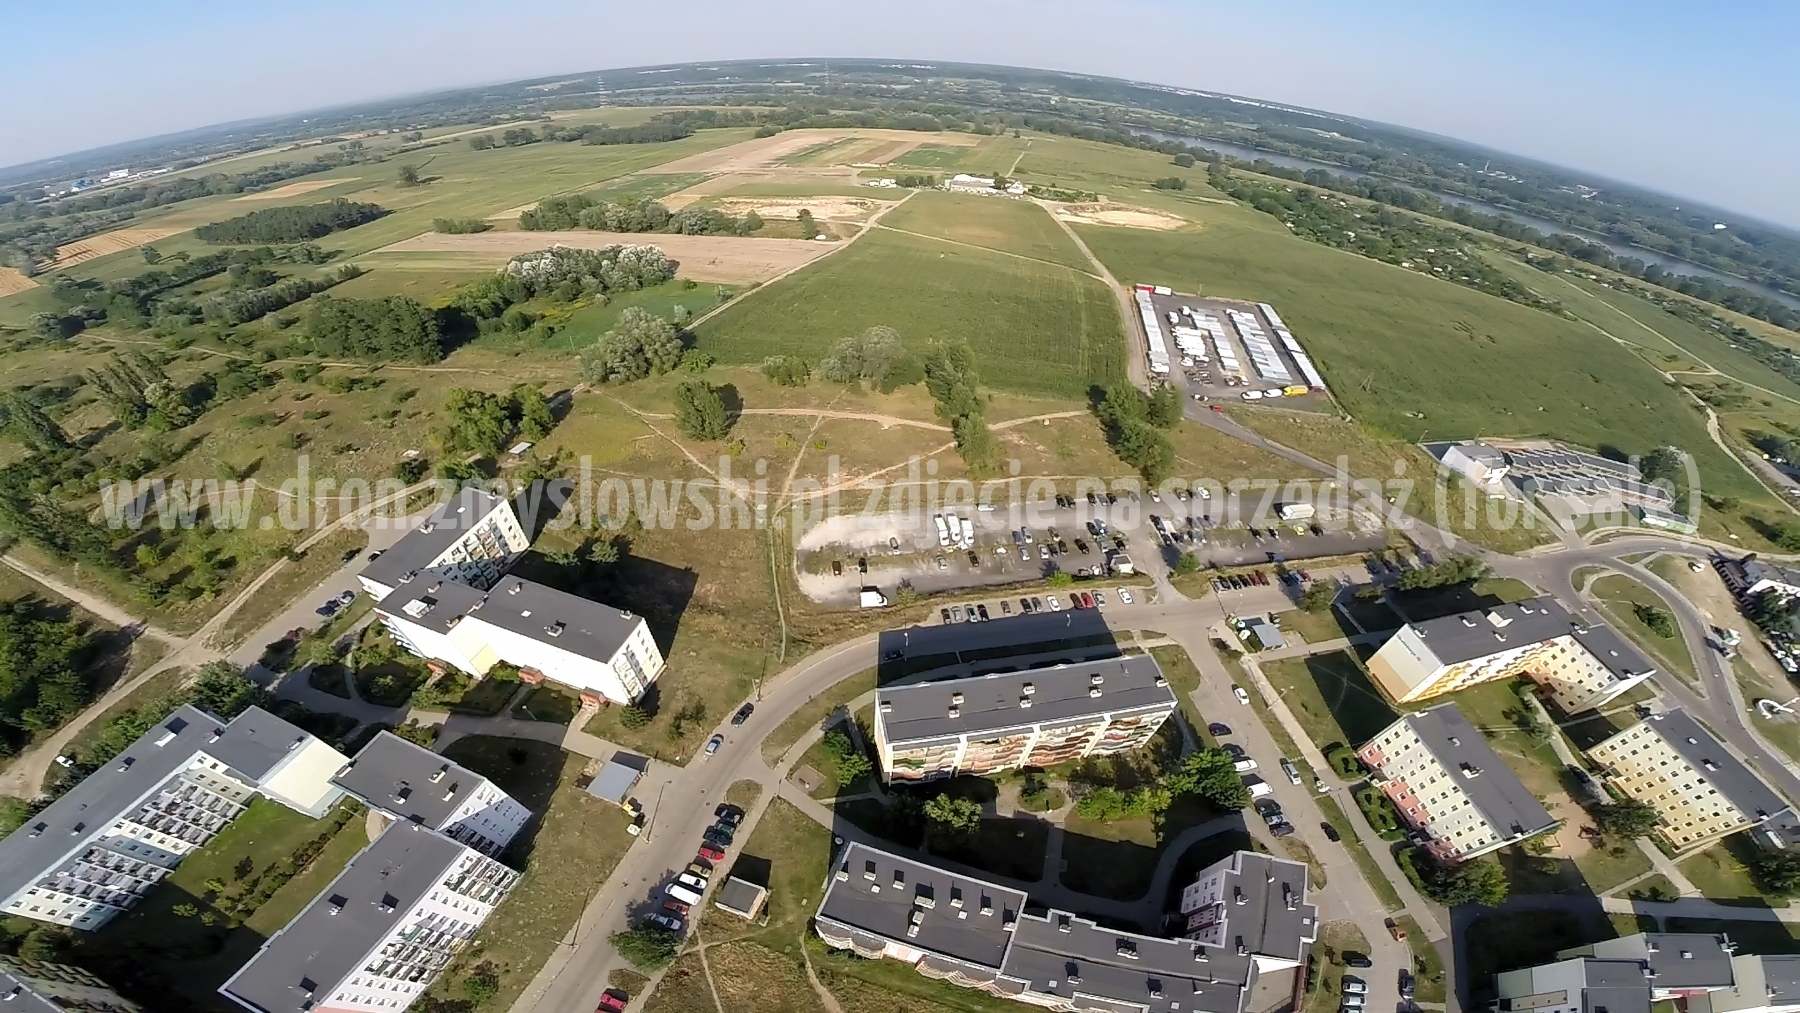 2014-08-02-dron-nad-Roweckiego-Grota-010-gigapixel-standard-width-3840px